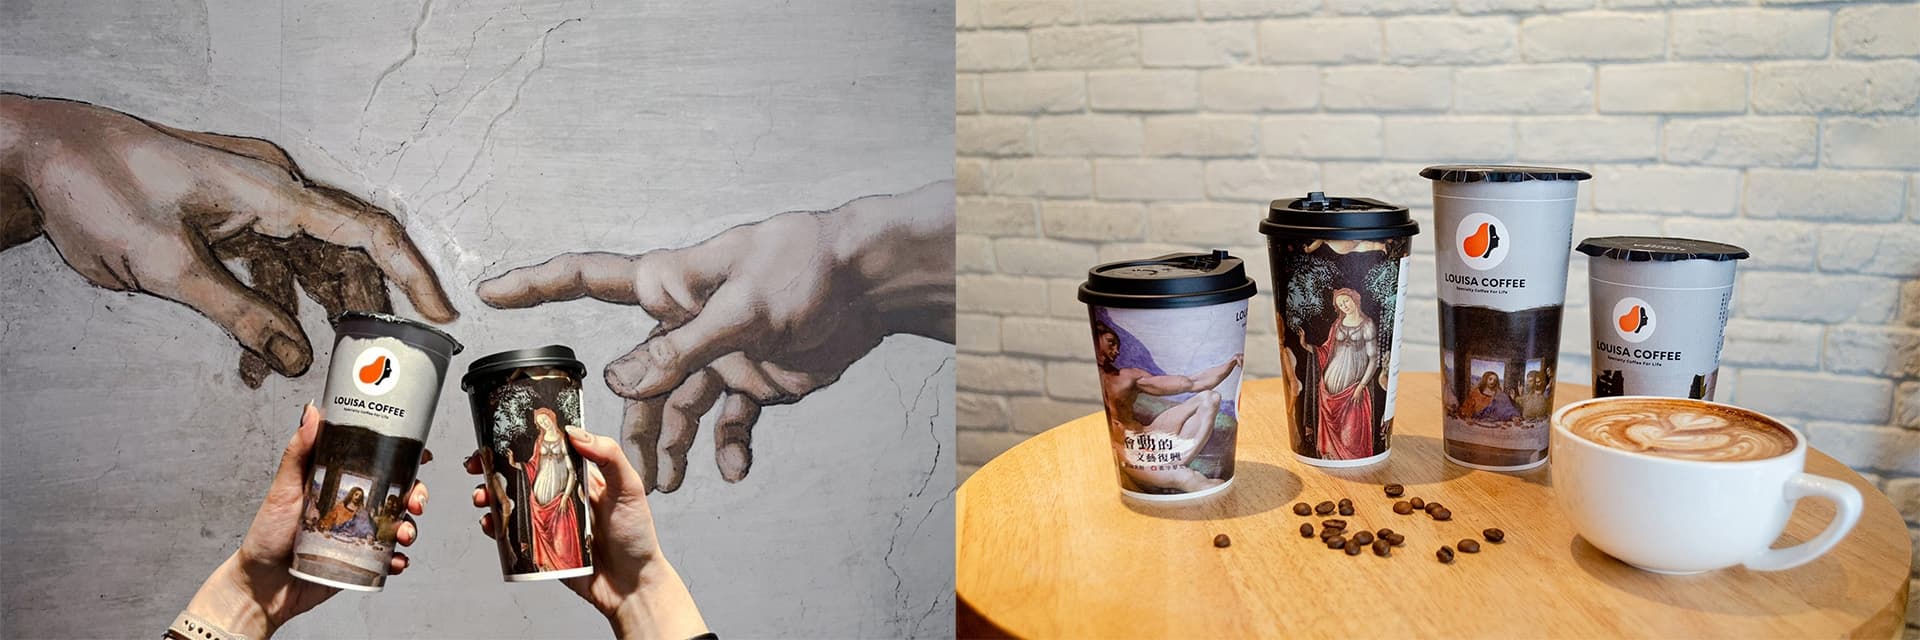 「會動的文藝復興」藝術大展與連鎖咖啡「路易莎」 跨界聯名杯登場! 咖啡香中微距欣賞世紀名作!